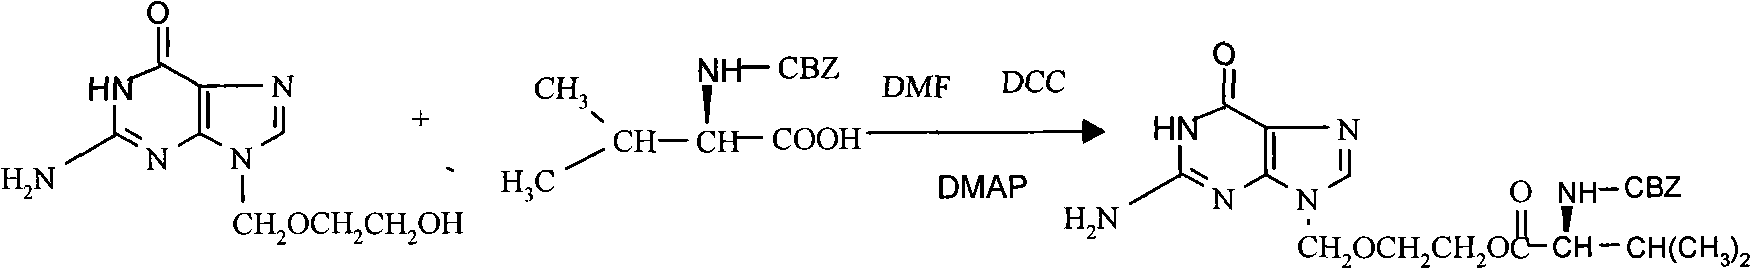 Preparation method of high-purity carbamazepine (CBZ)-valaciclovir